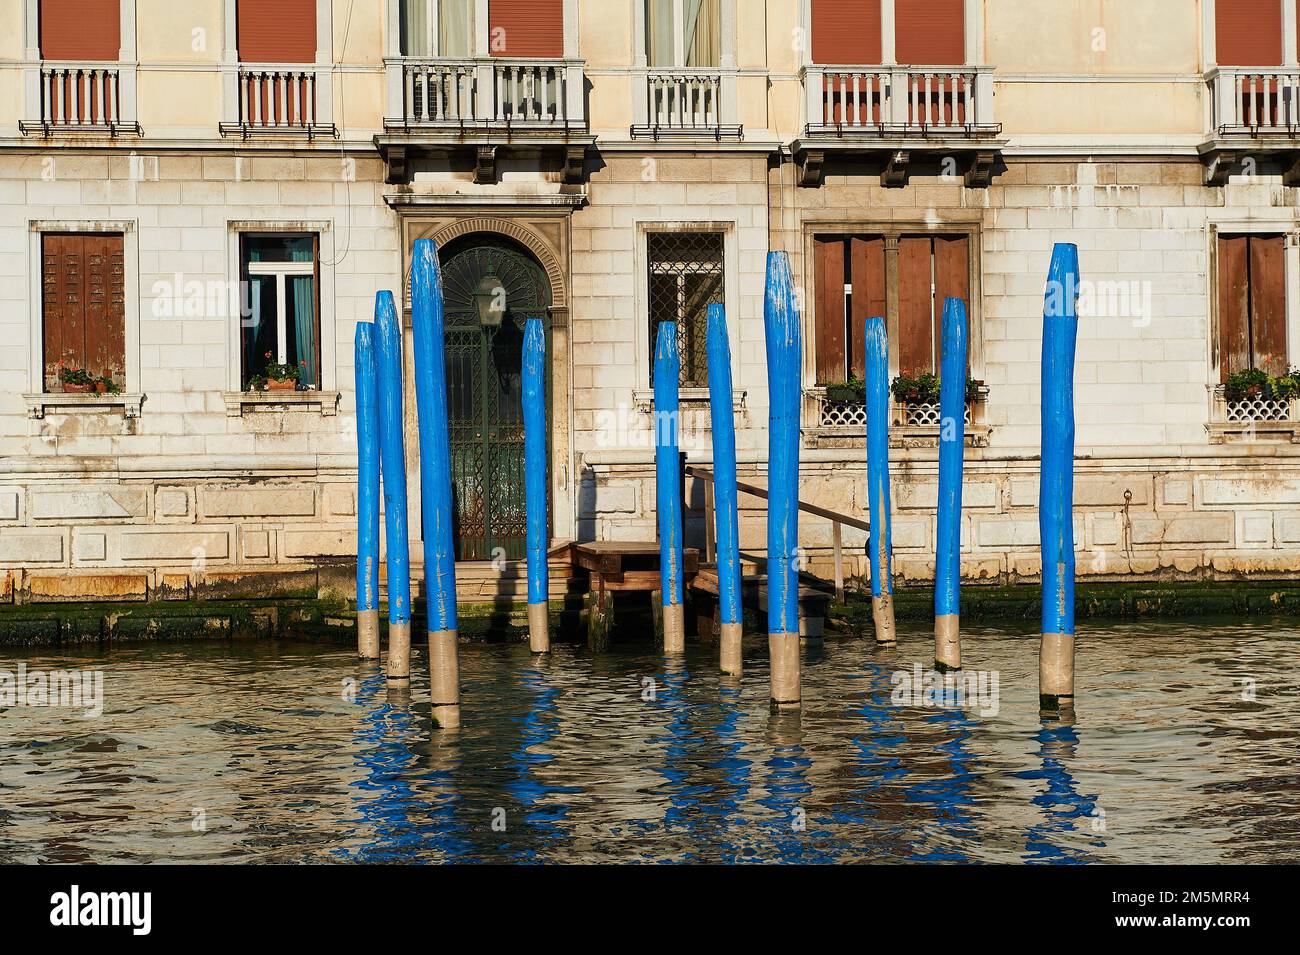 molo vuoto con tipici posti veneziani blu davanti all'ingresso di una casa sul canale, venezia, italia Foto Stock